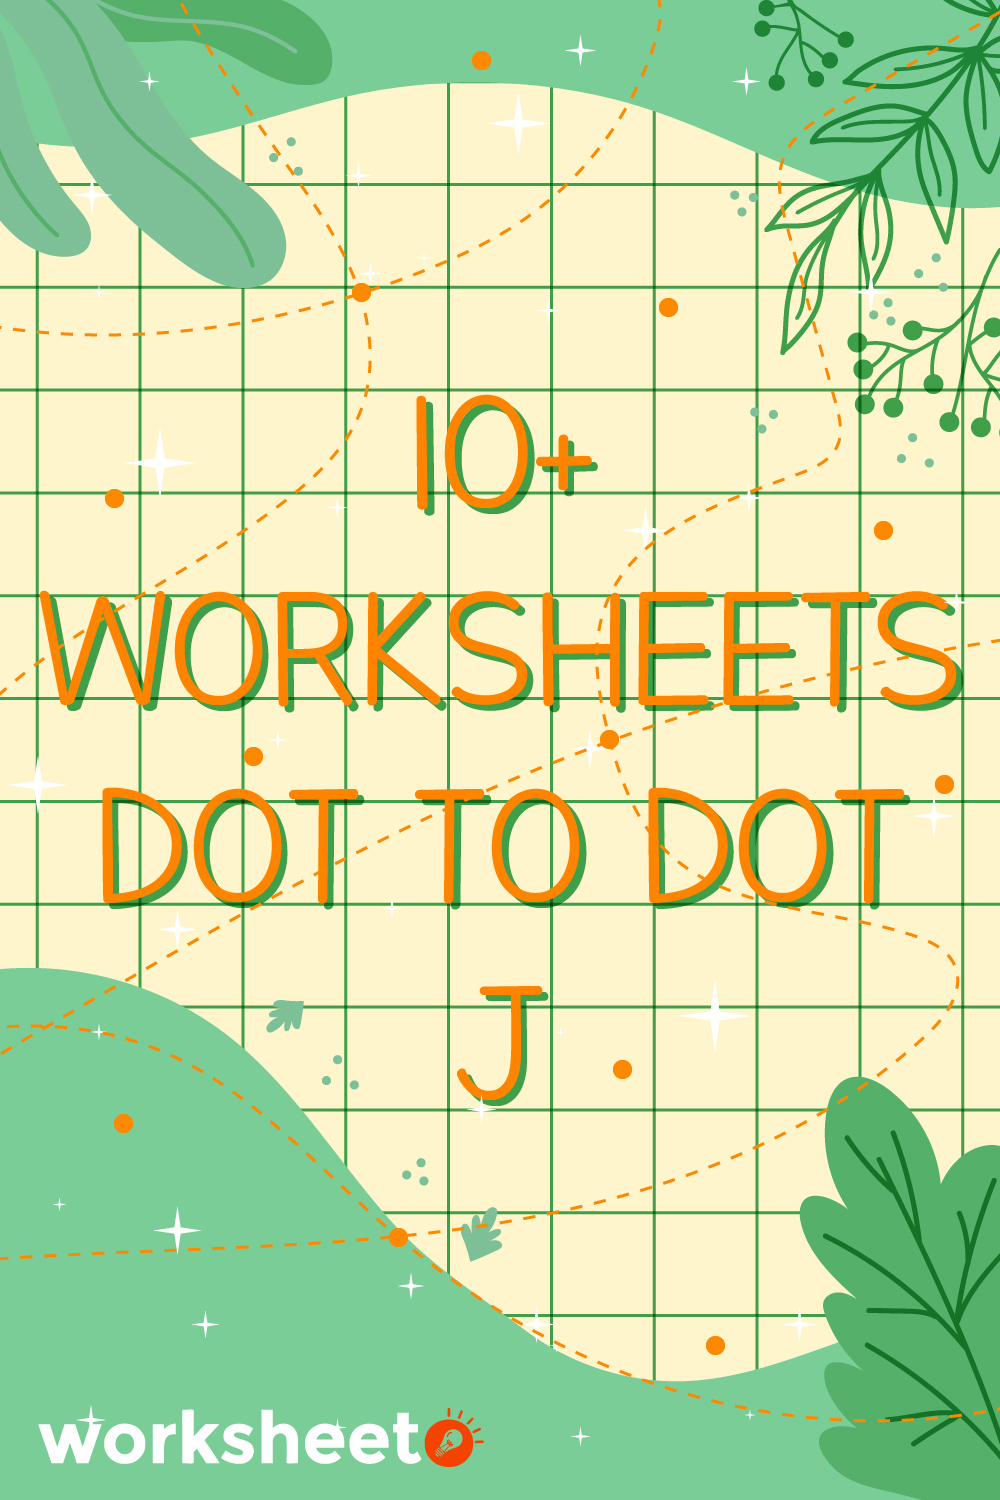 Worksheets Dot to Dot J